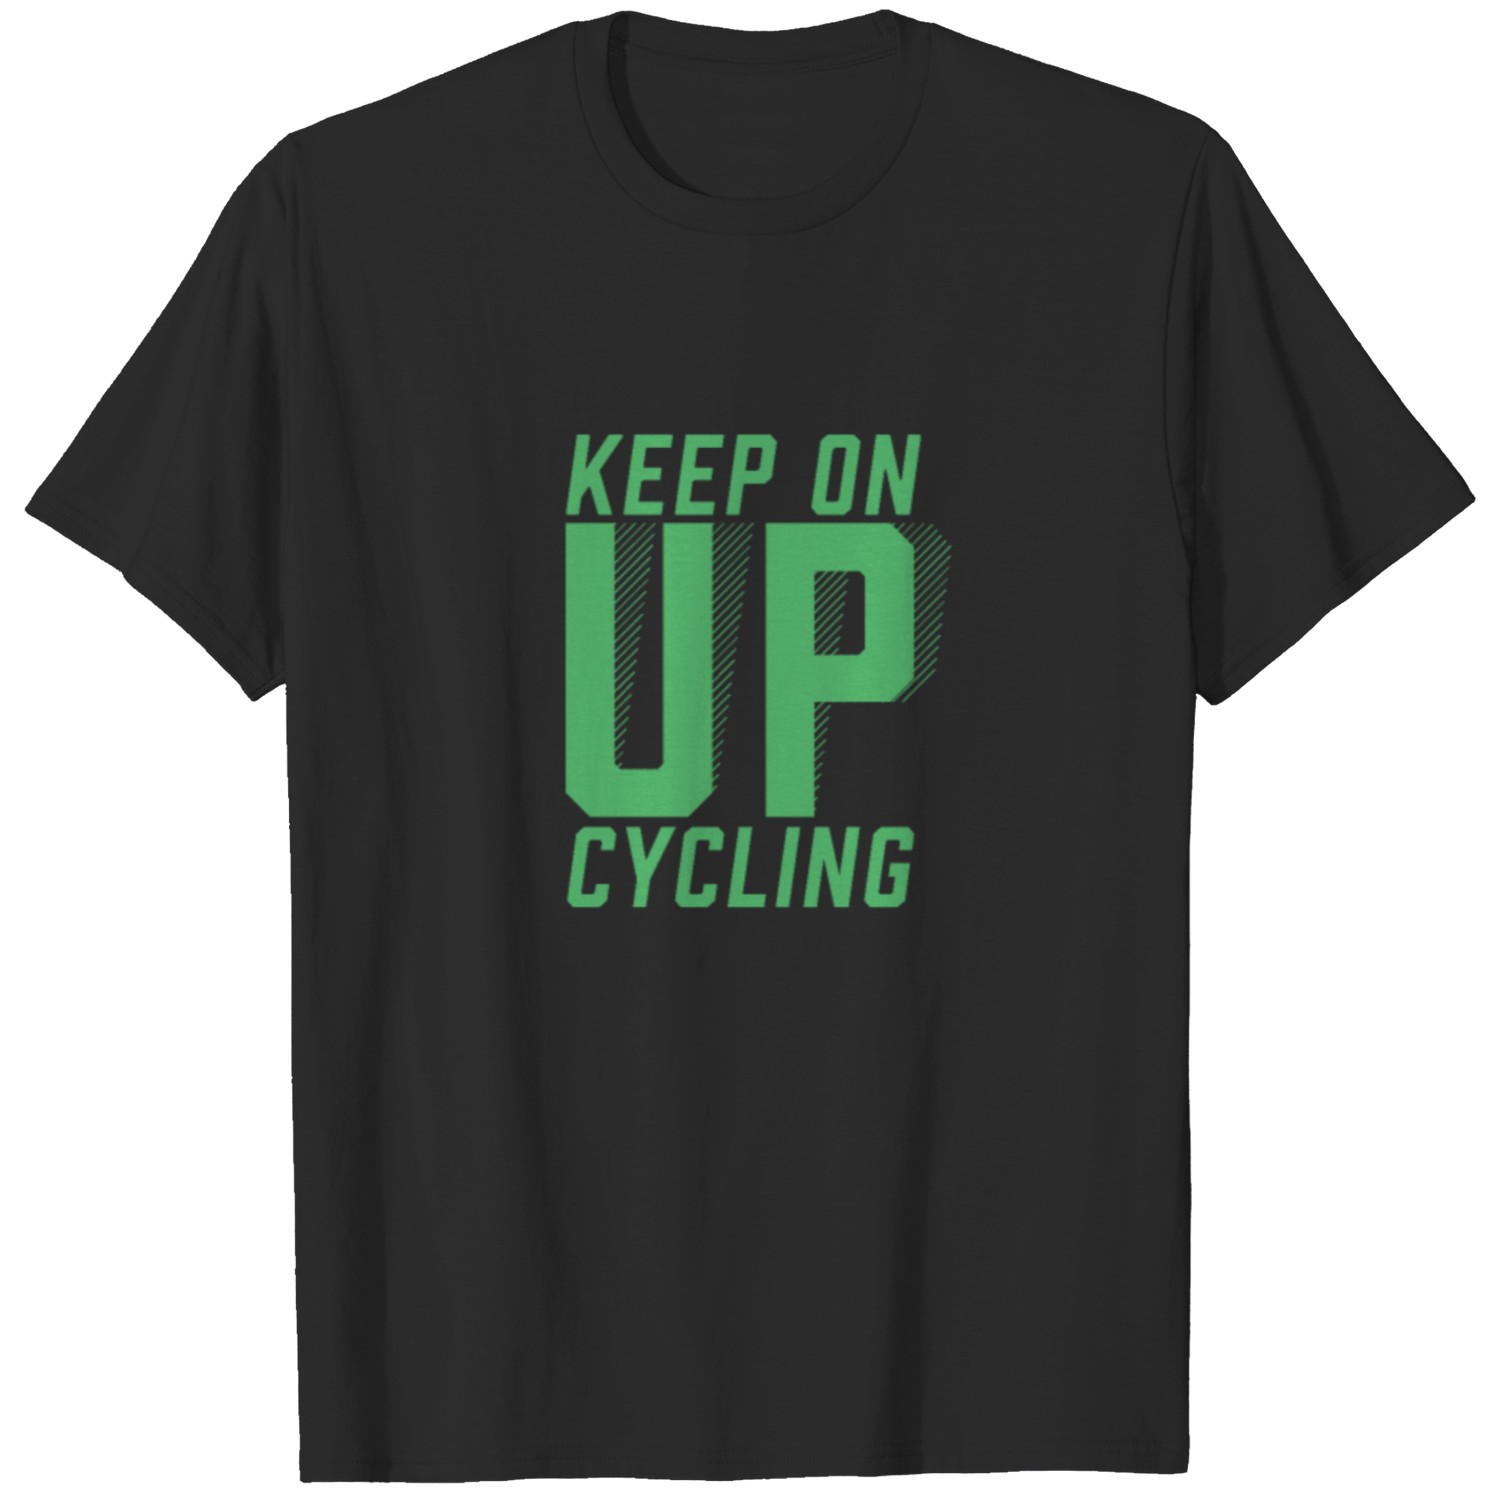 Upcycling Upcycling Upcycling Upcycling Upcycling T-shirt